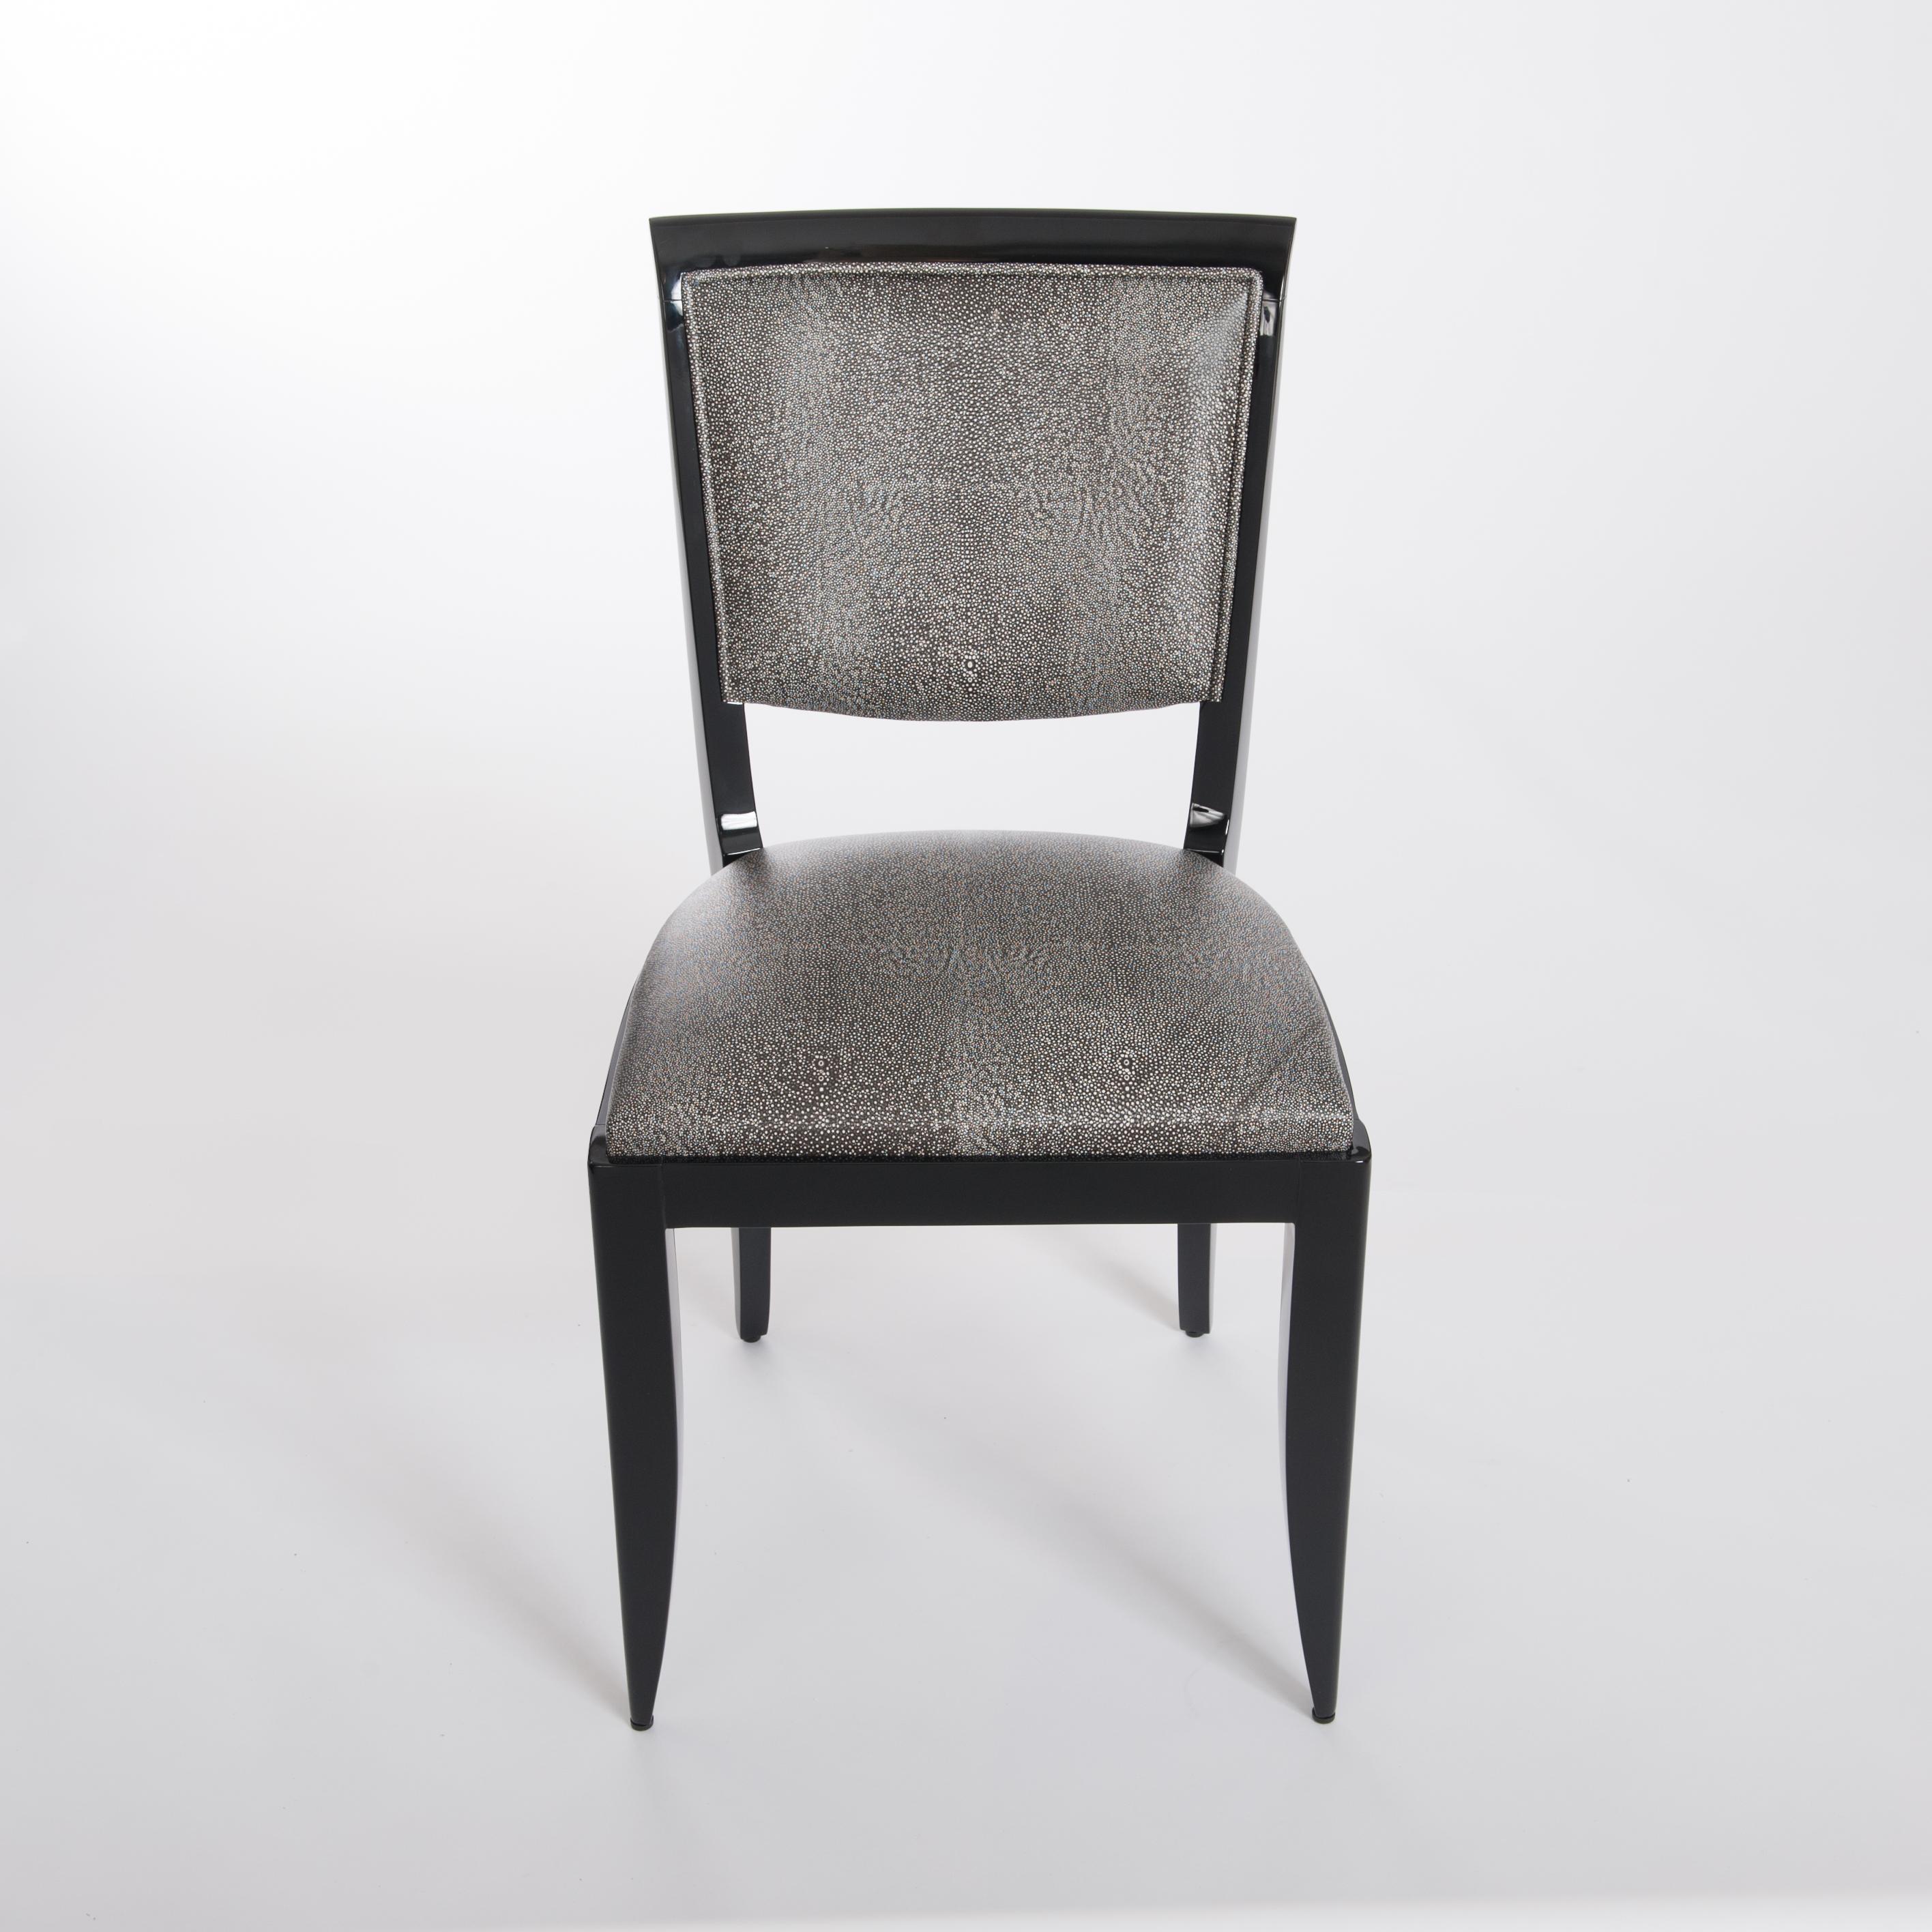 Ensemble de six chaises de salle à manger élégantes et confortables de style Art déco français, structure en bois laquée à nouveau avec un brillant noir et entièrement retapissée avec du cuir noir et blanc en raydesign.
Les chaises ont des pieds